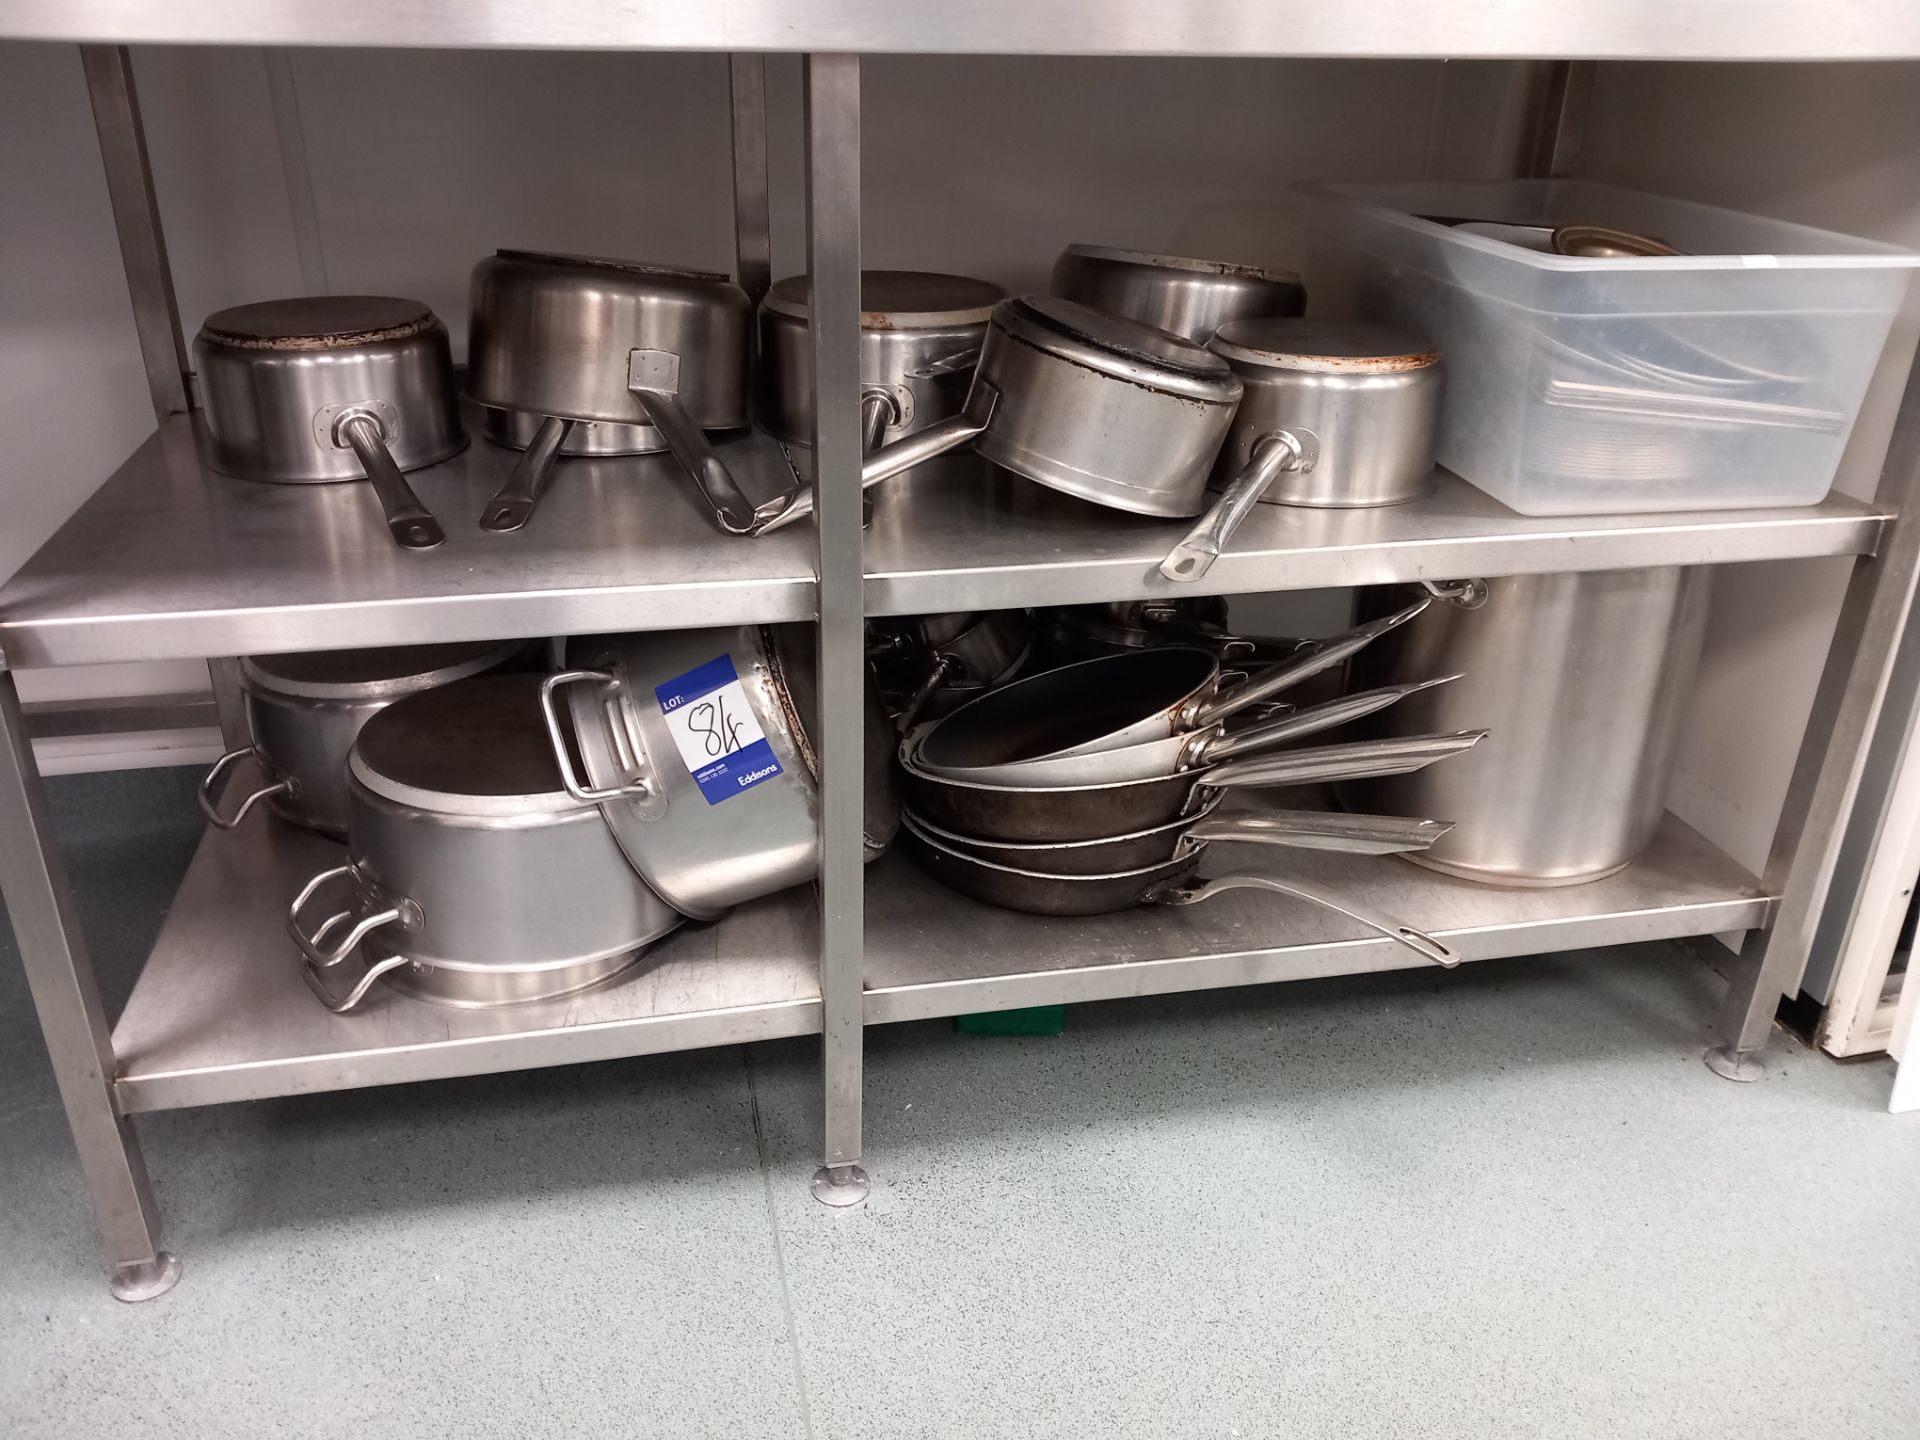 Quantity of pots & pans